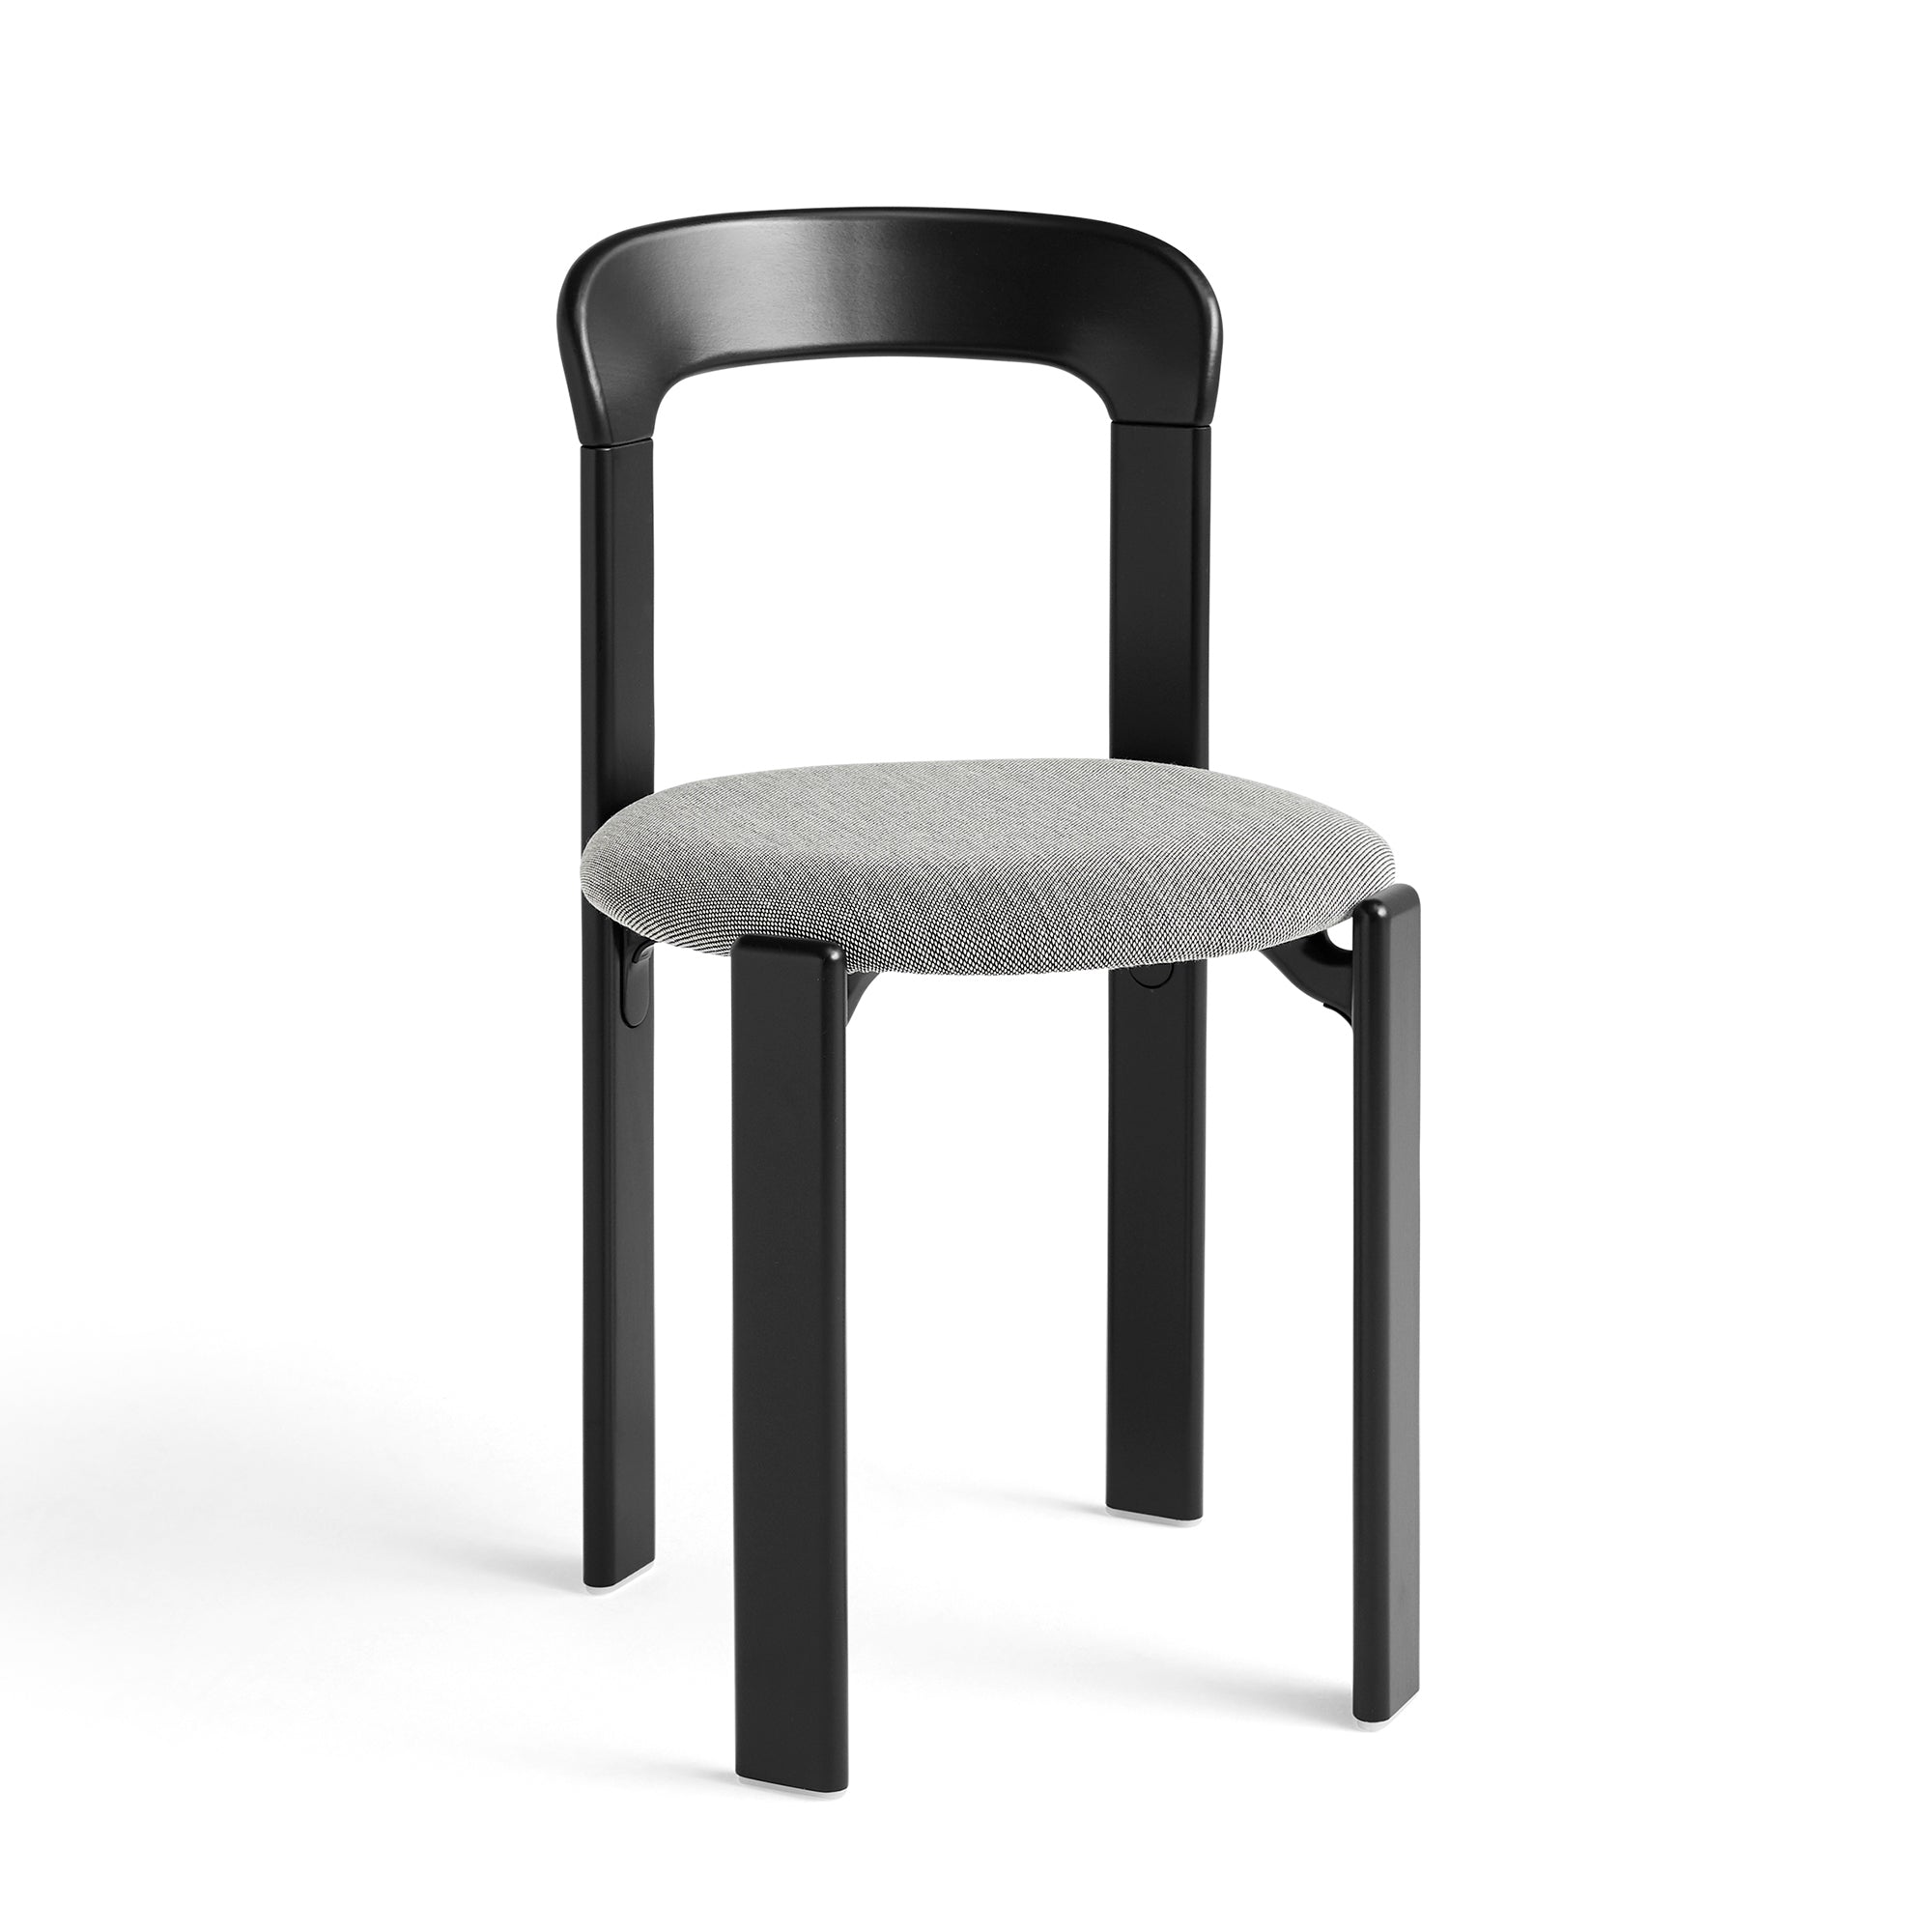 Rey Chair, scaun tapițat